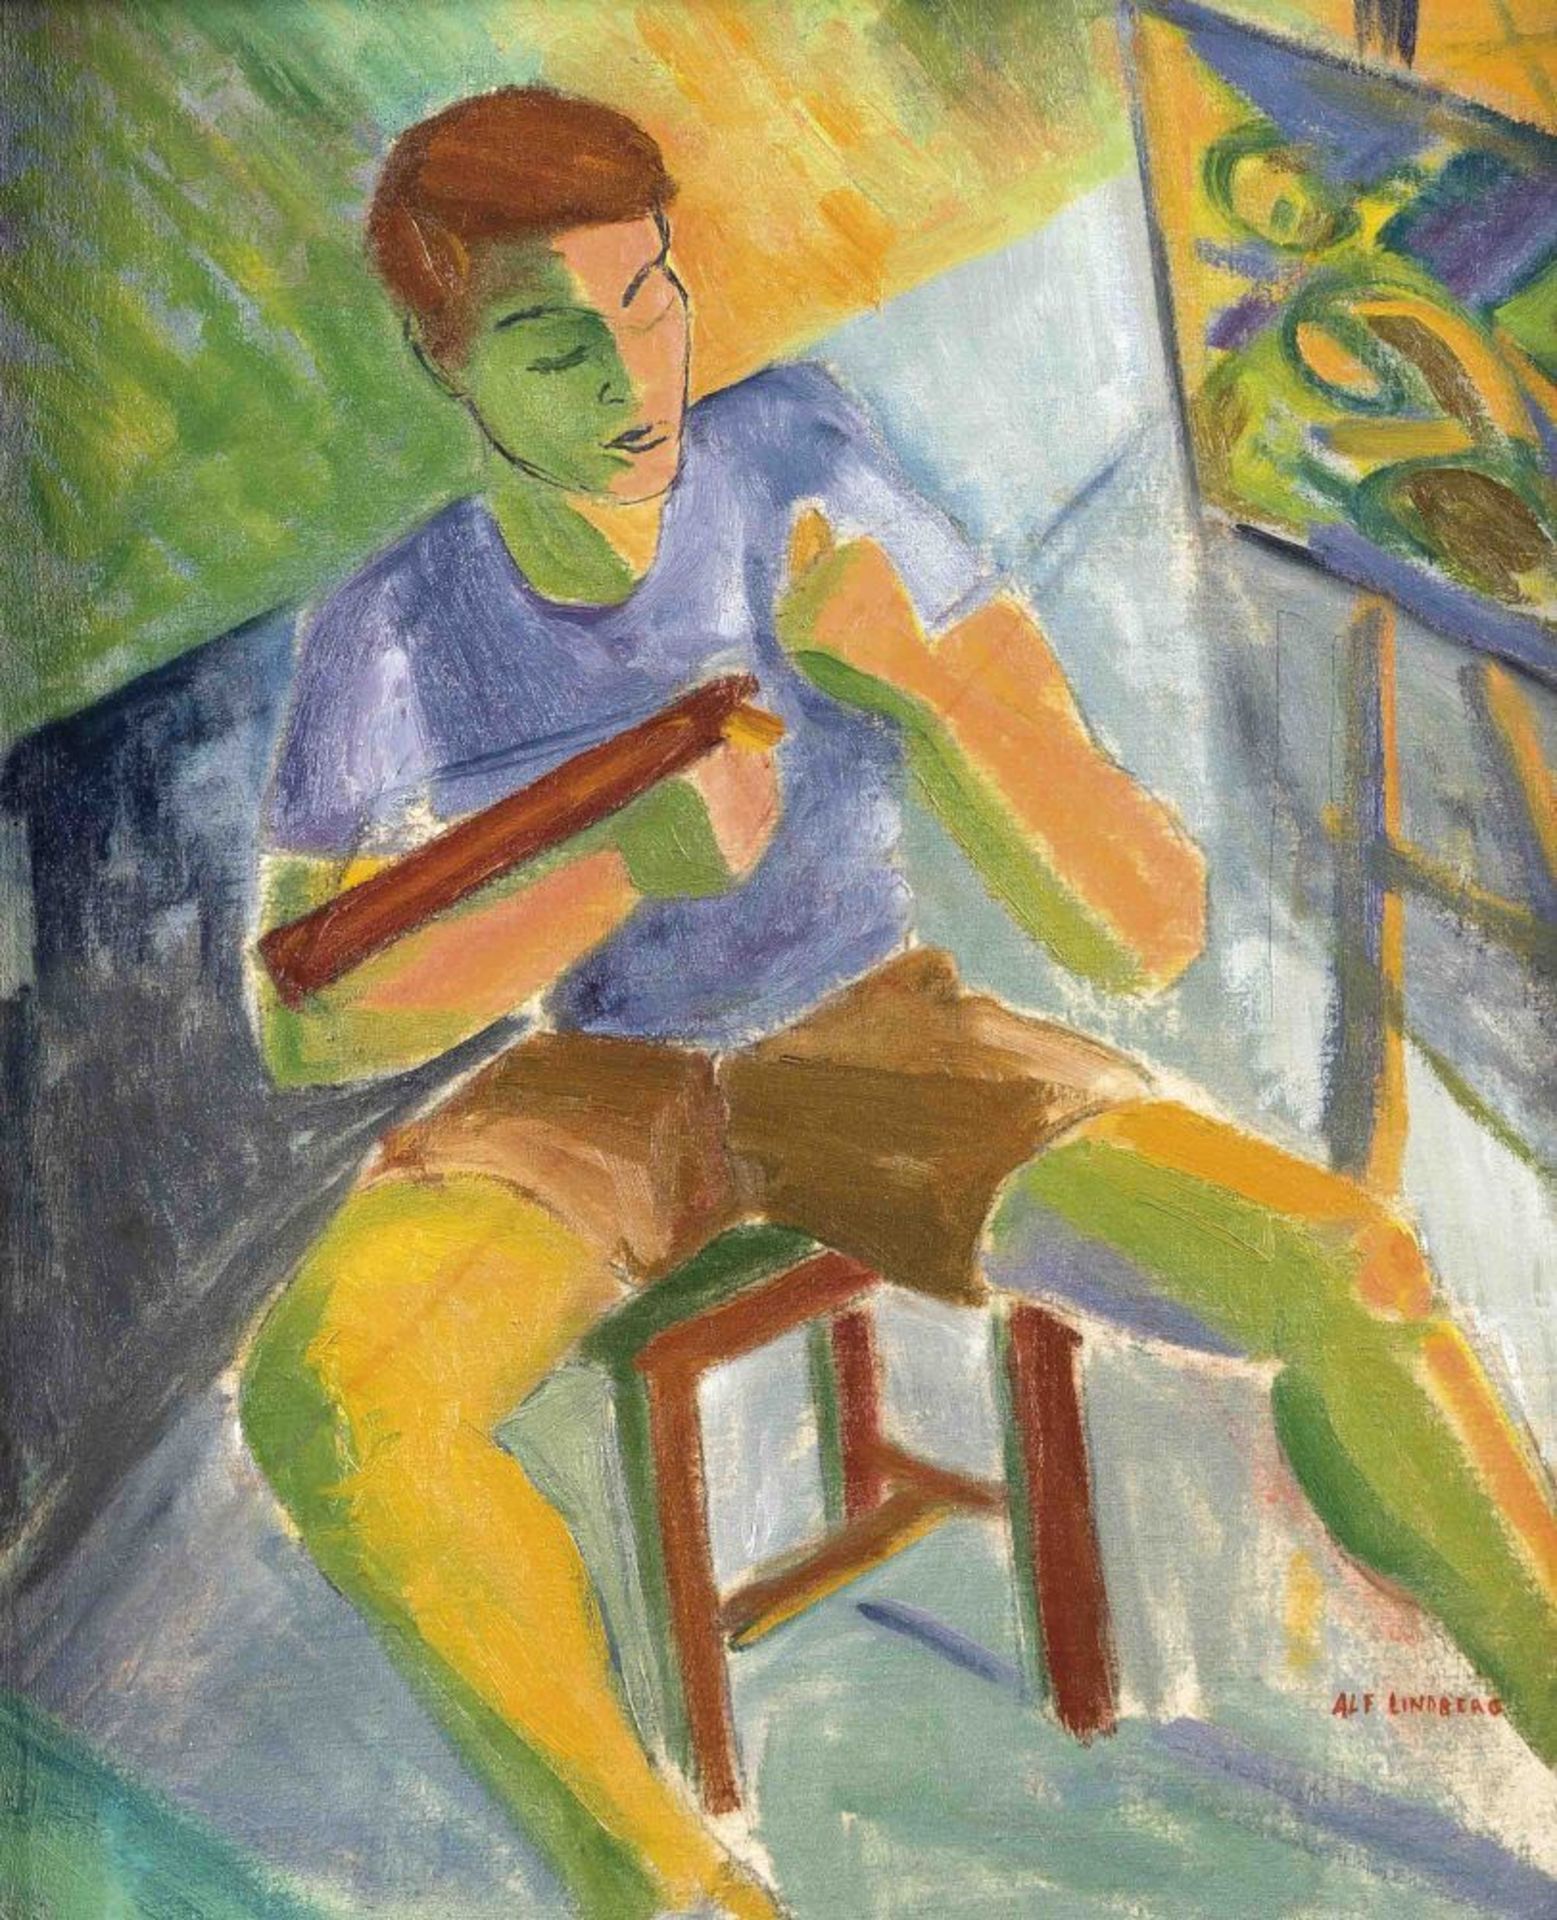 Alf Lindberg (1905-1990), schwedischer Maler, Bildnis eines jungen Mannes an der Staffelei, Öl/